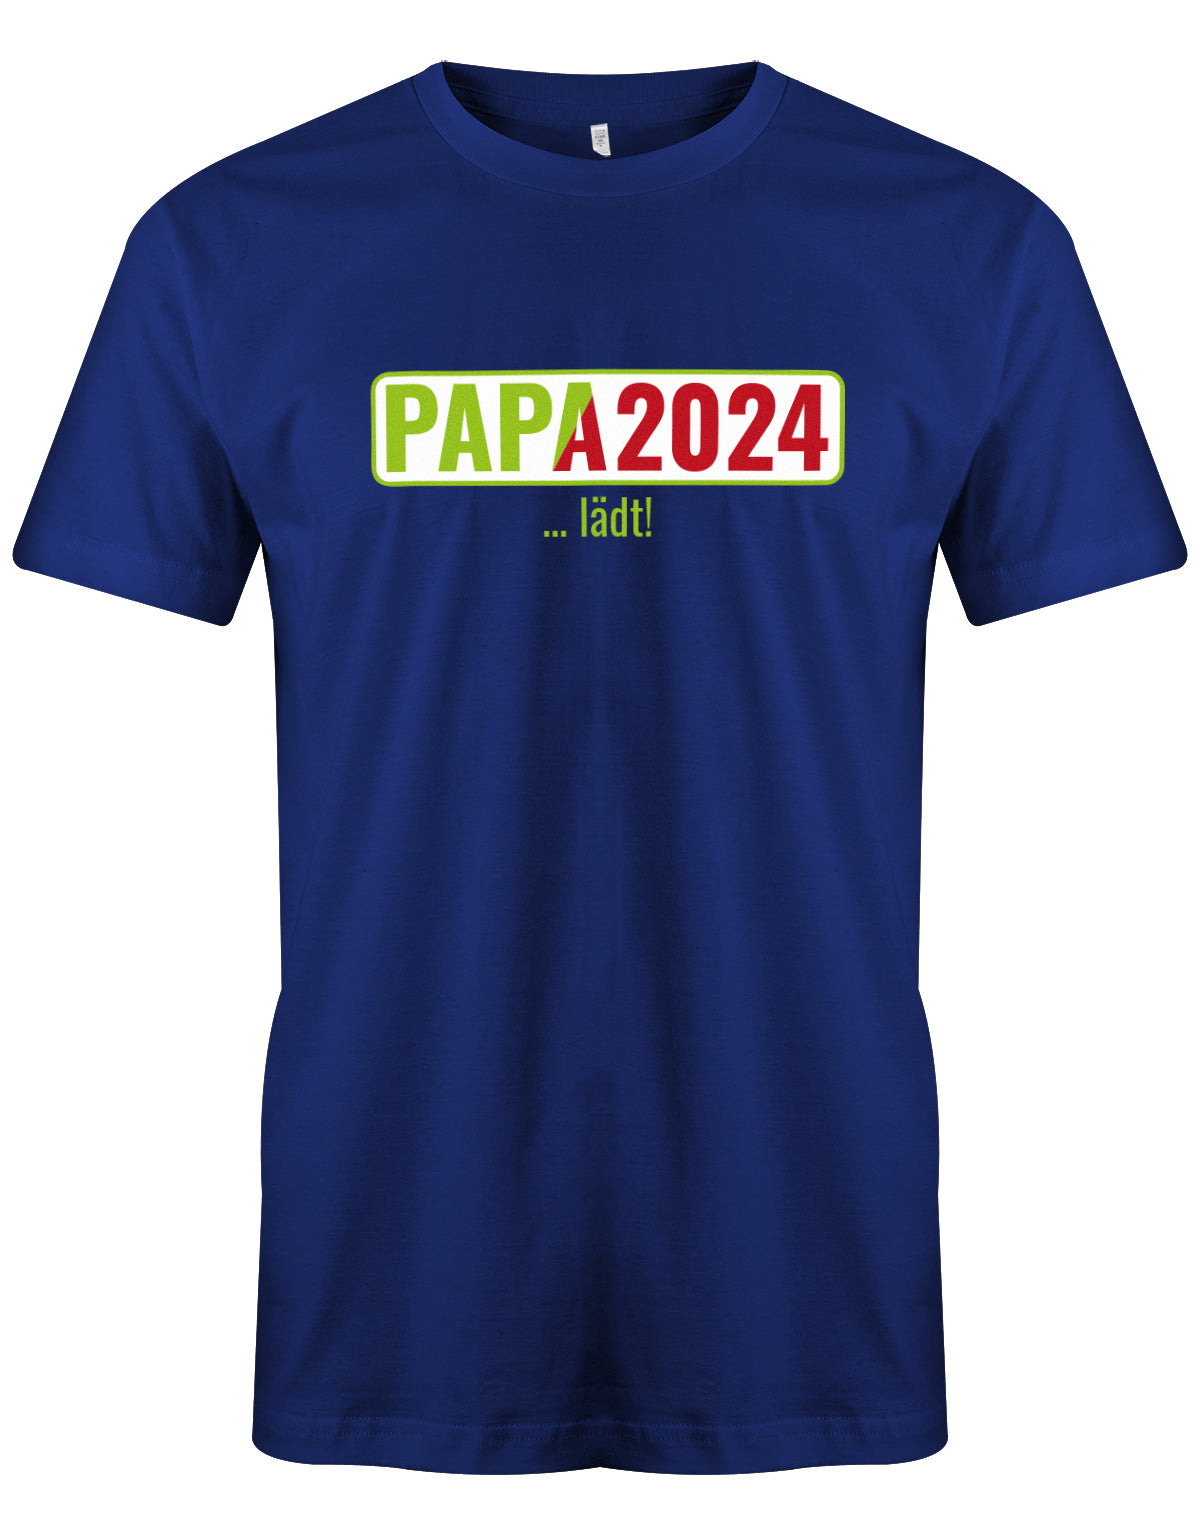 Papa 2024 lädt - loading - Werdender Papa Shirt Herren Royalblau